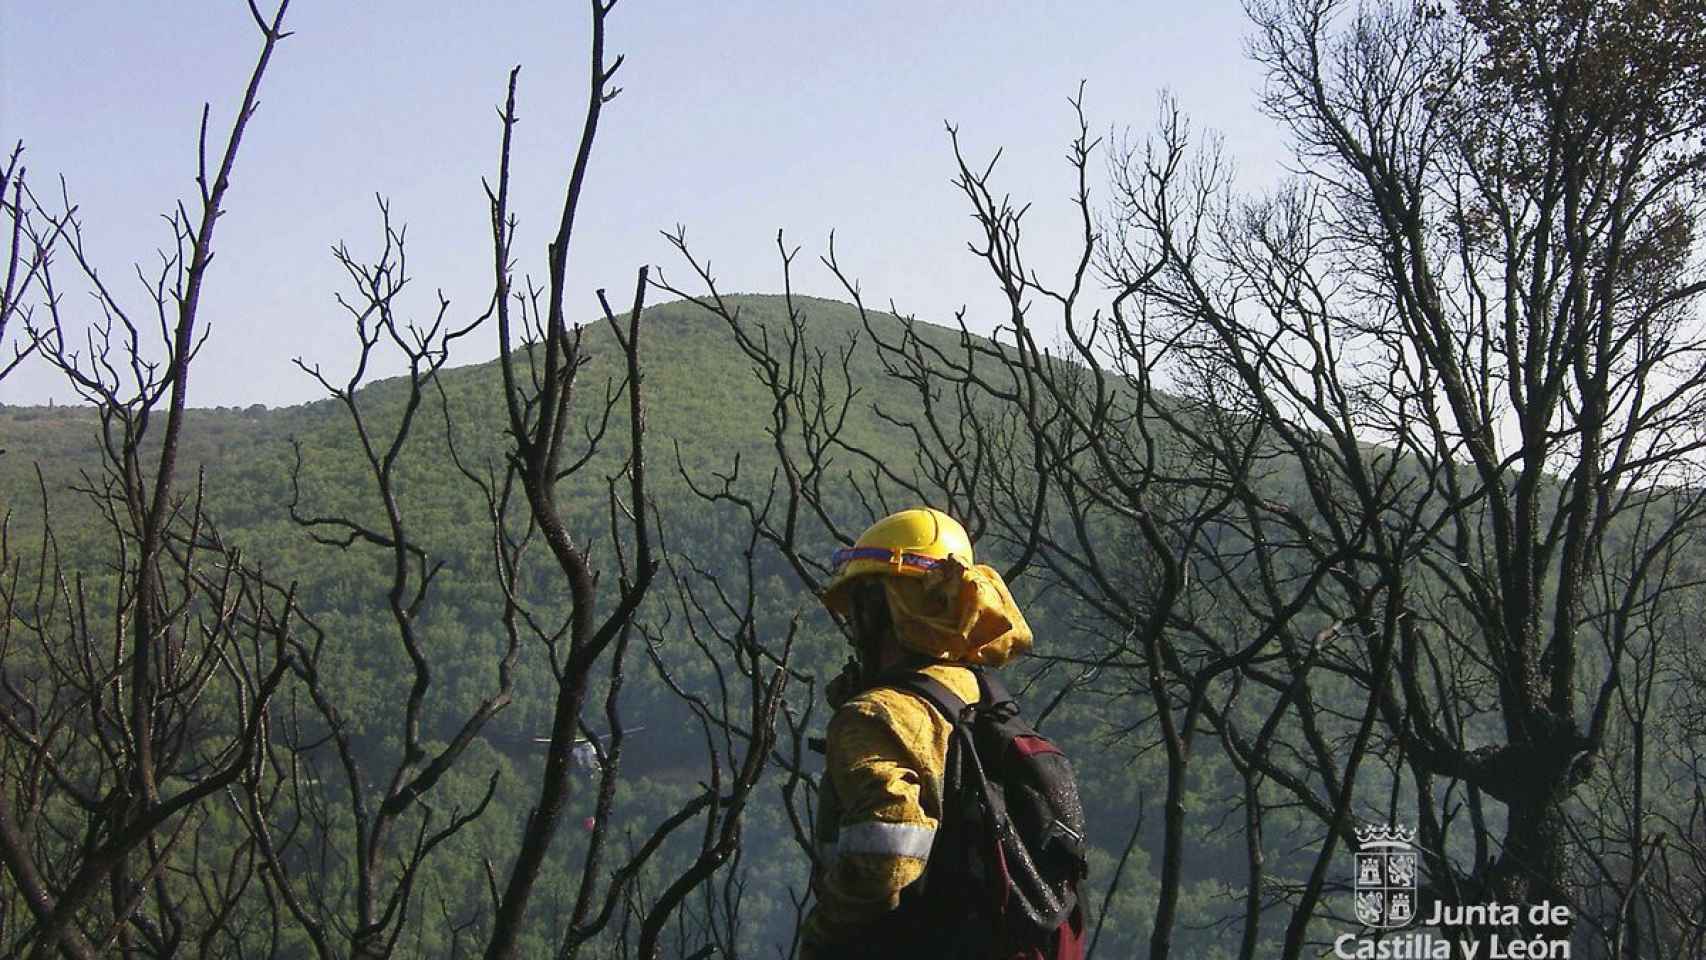 Imagen de un bombero forestal de la Junta de Castilla y León.